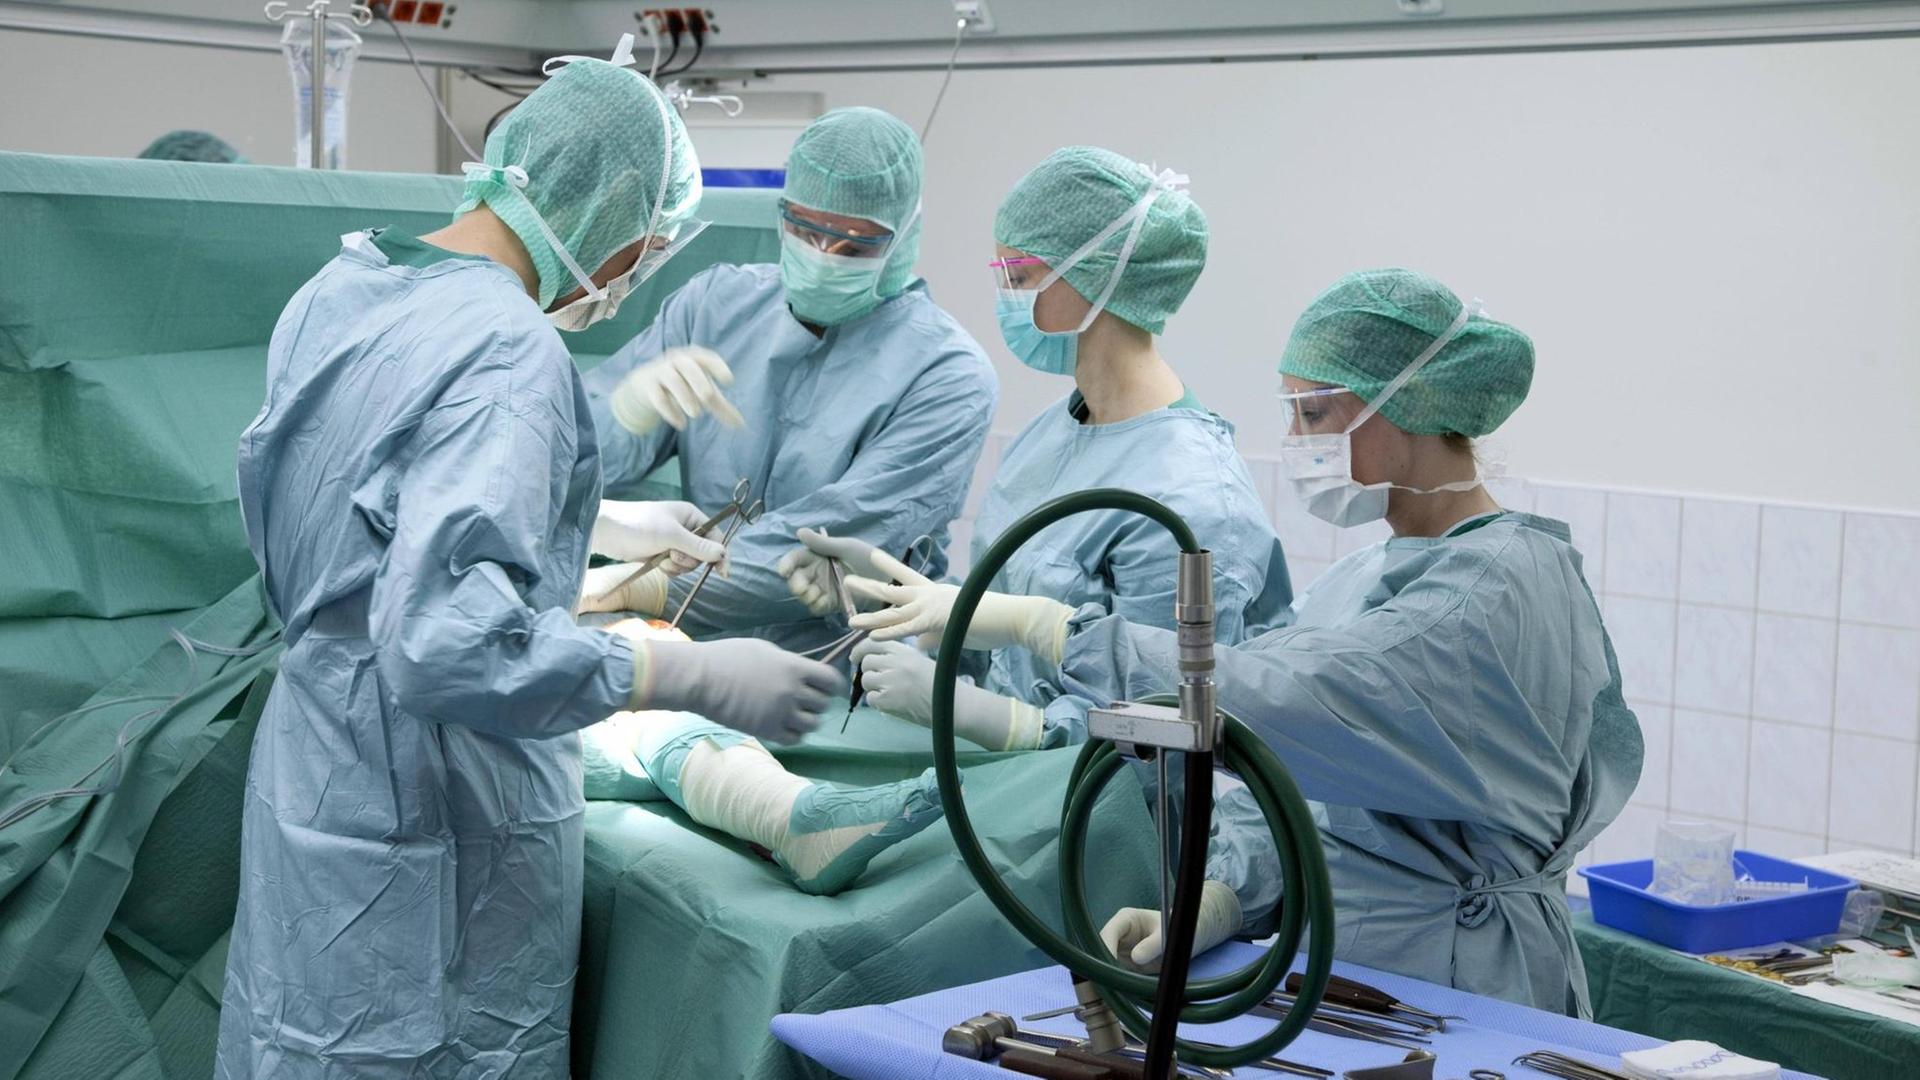 Operation im Krankenhaus: Ein Operationsteam arbeitet an einer Operation am Knie eines Patienten.